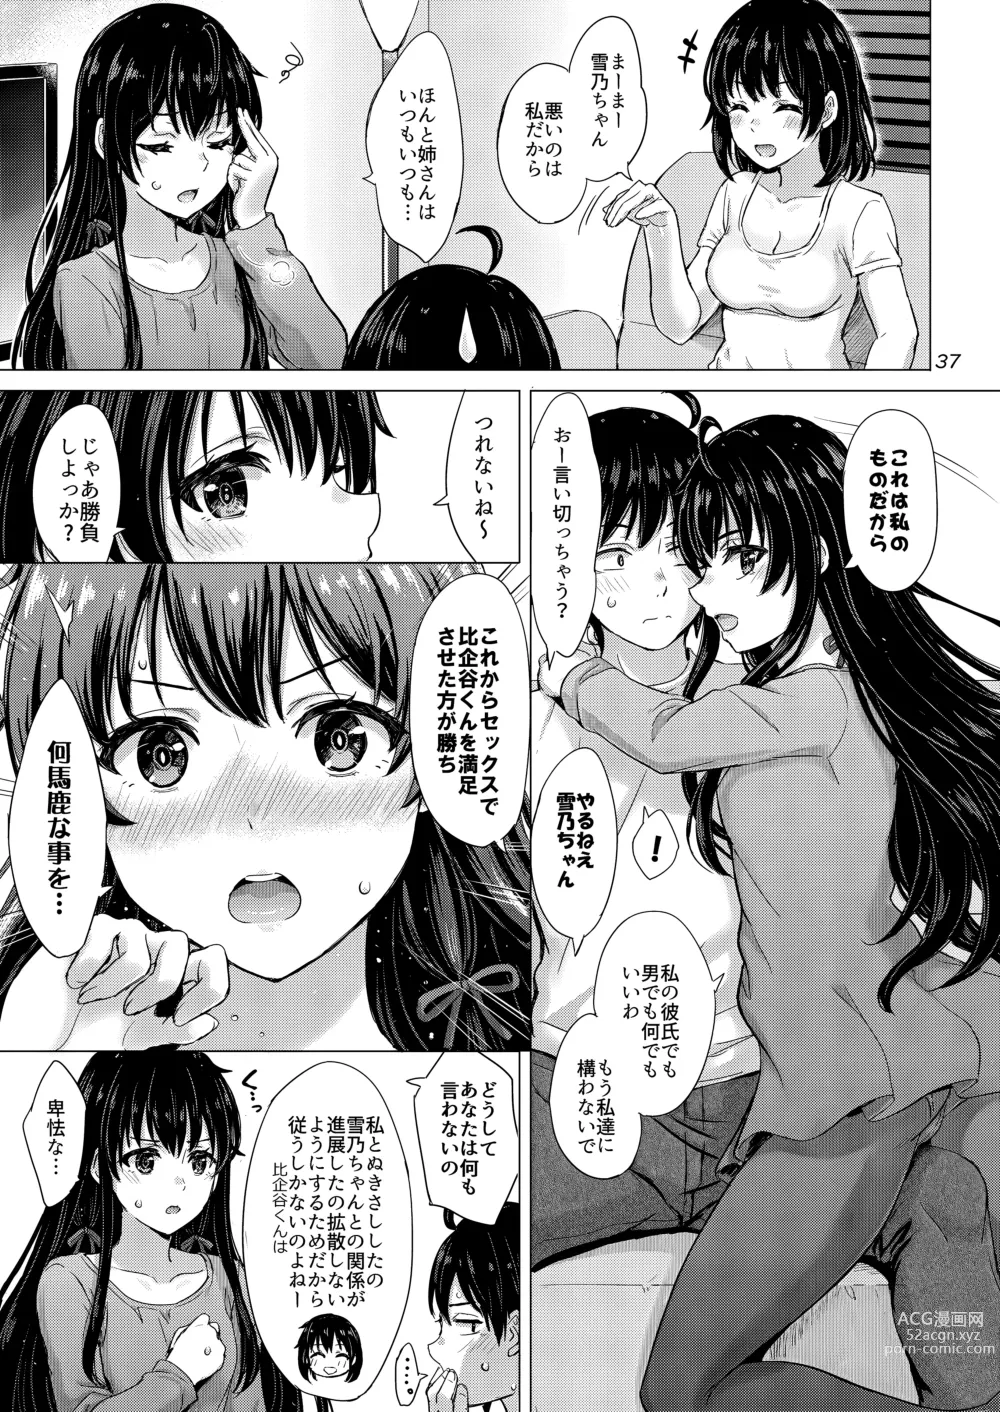 Page 36 of doujinshi Yukinoshita Shimai to Iyarashii Futari no Himegoto. - The Yukinoshita sisters each have sex with hachiman.